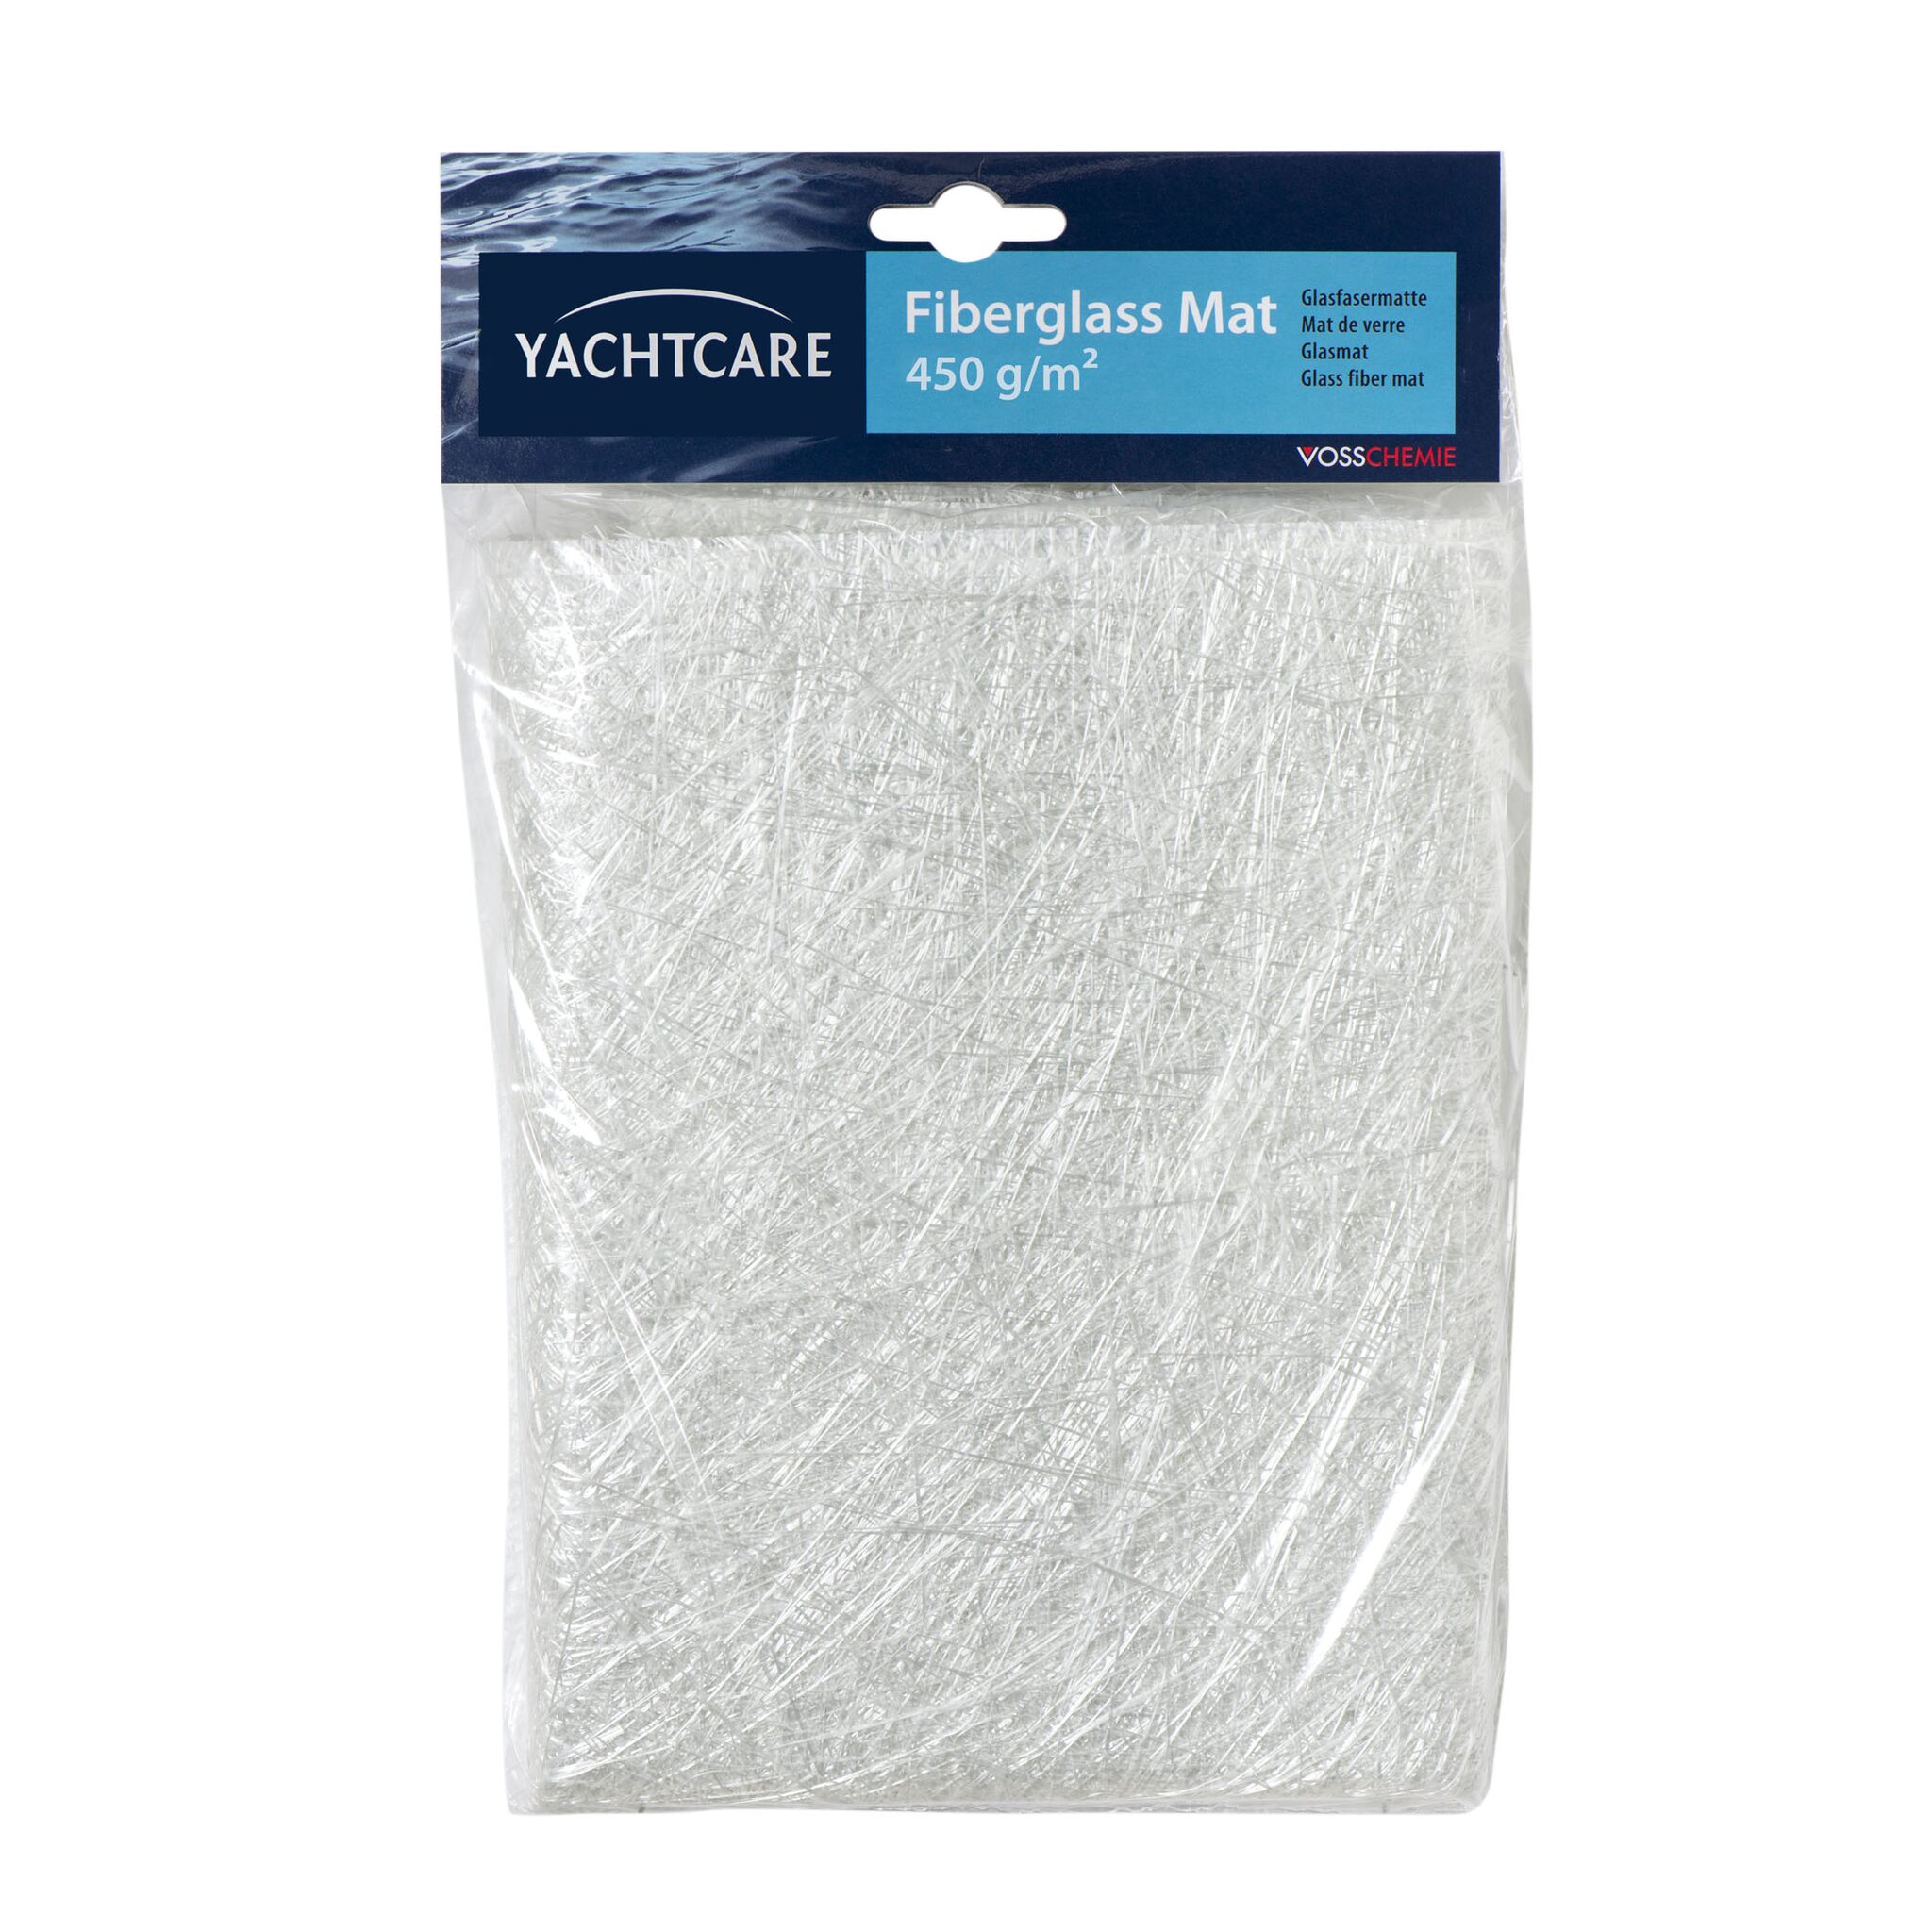 Yachtcare glass fiber mat